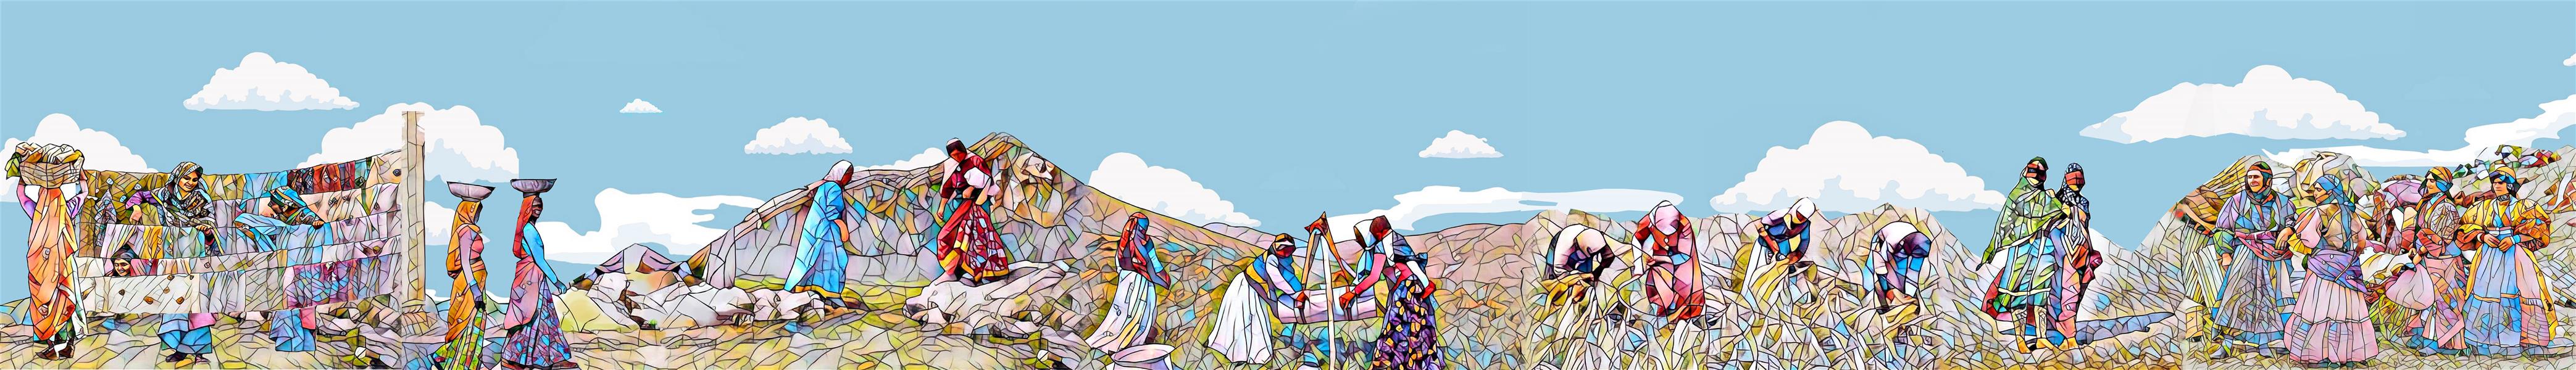 هنر نقاشی و گرافیک محفل نقاشی و گرافیک سنا اوصانلو «خورشید و زن» برای ستایش از زنان زحمتکش سرزمینم خصوصا زنان روستایی و عشایر